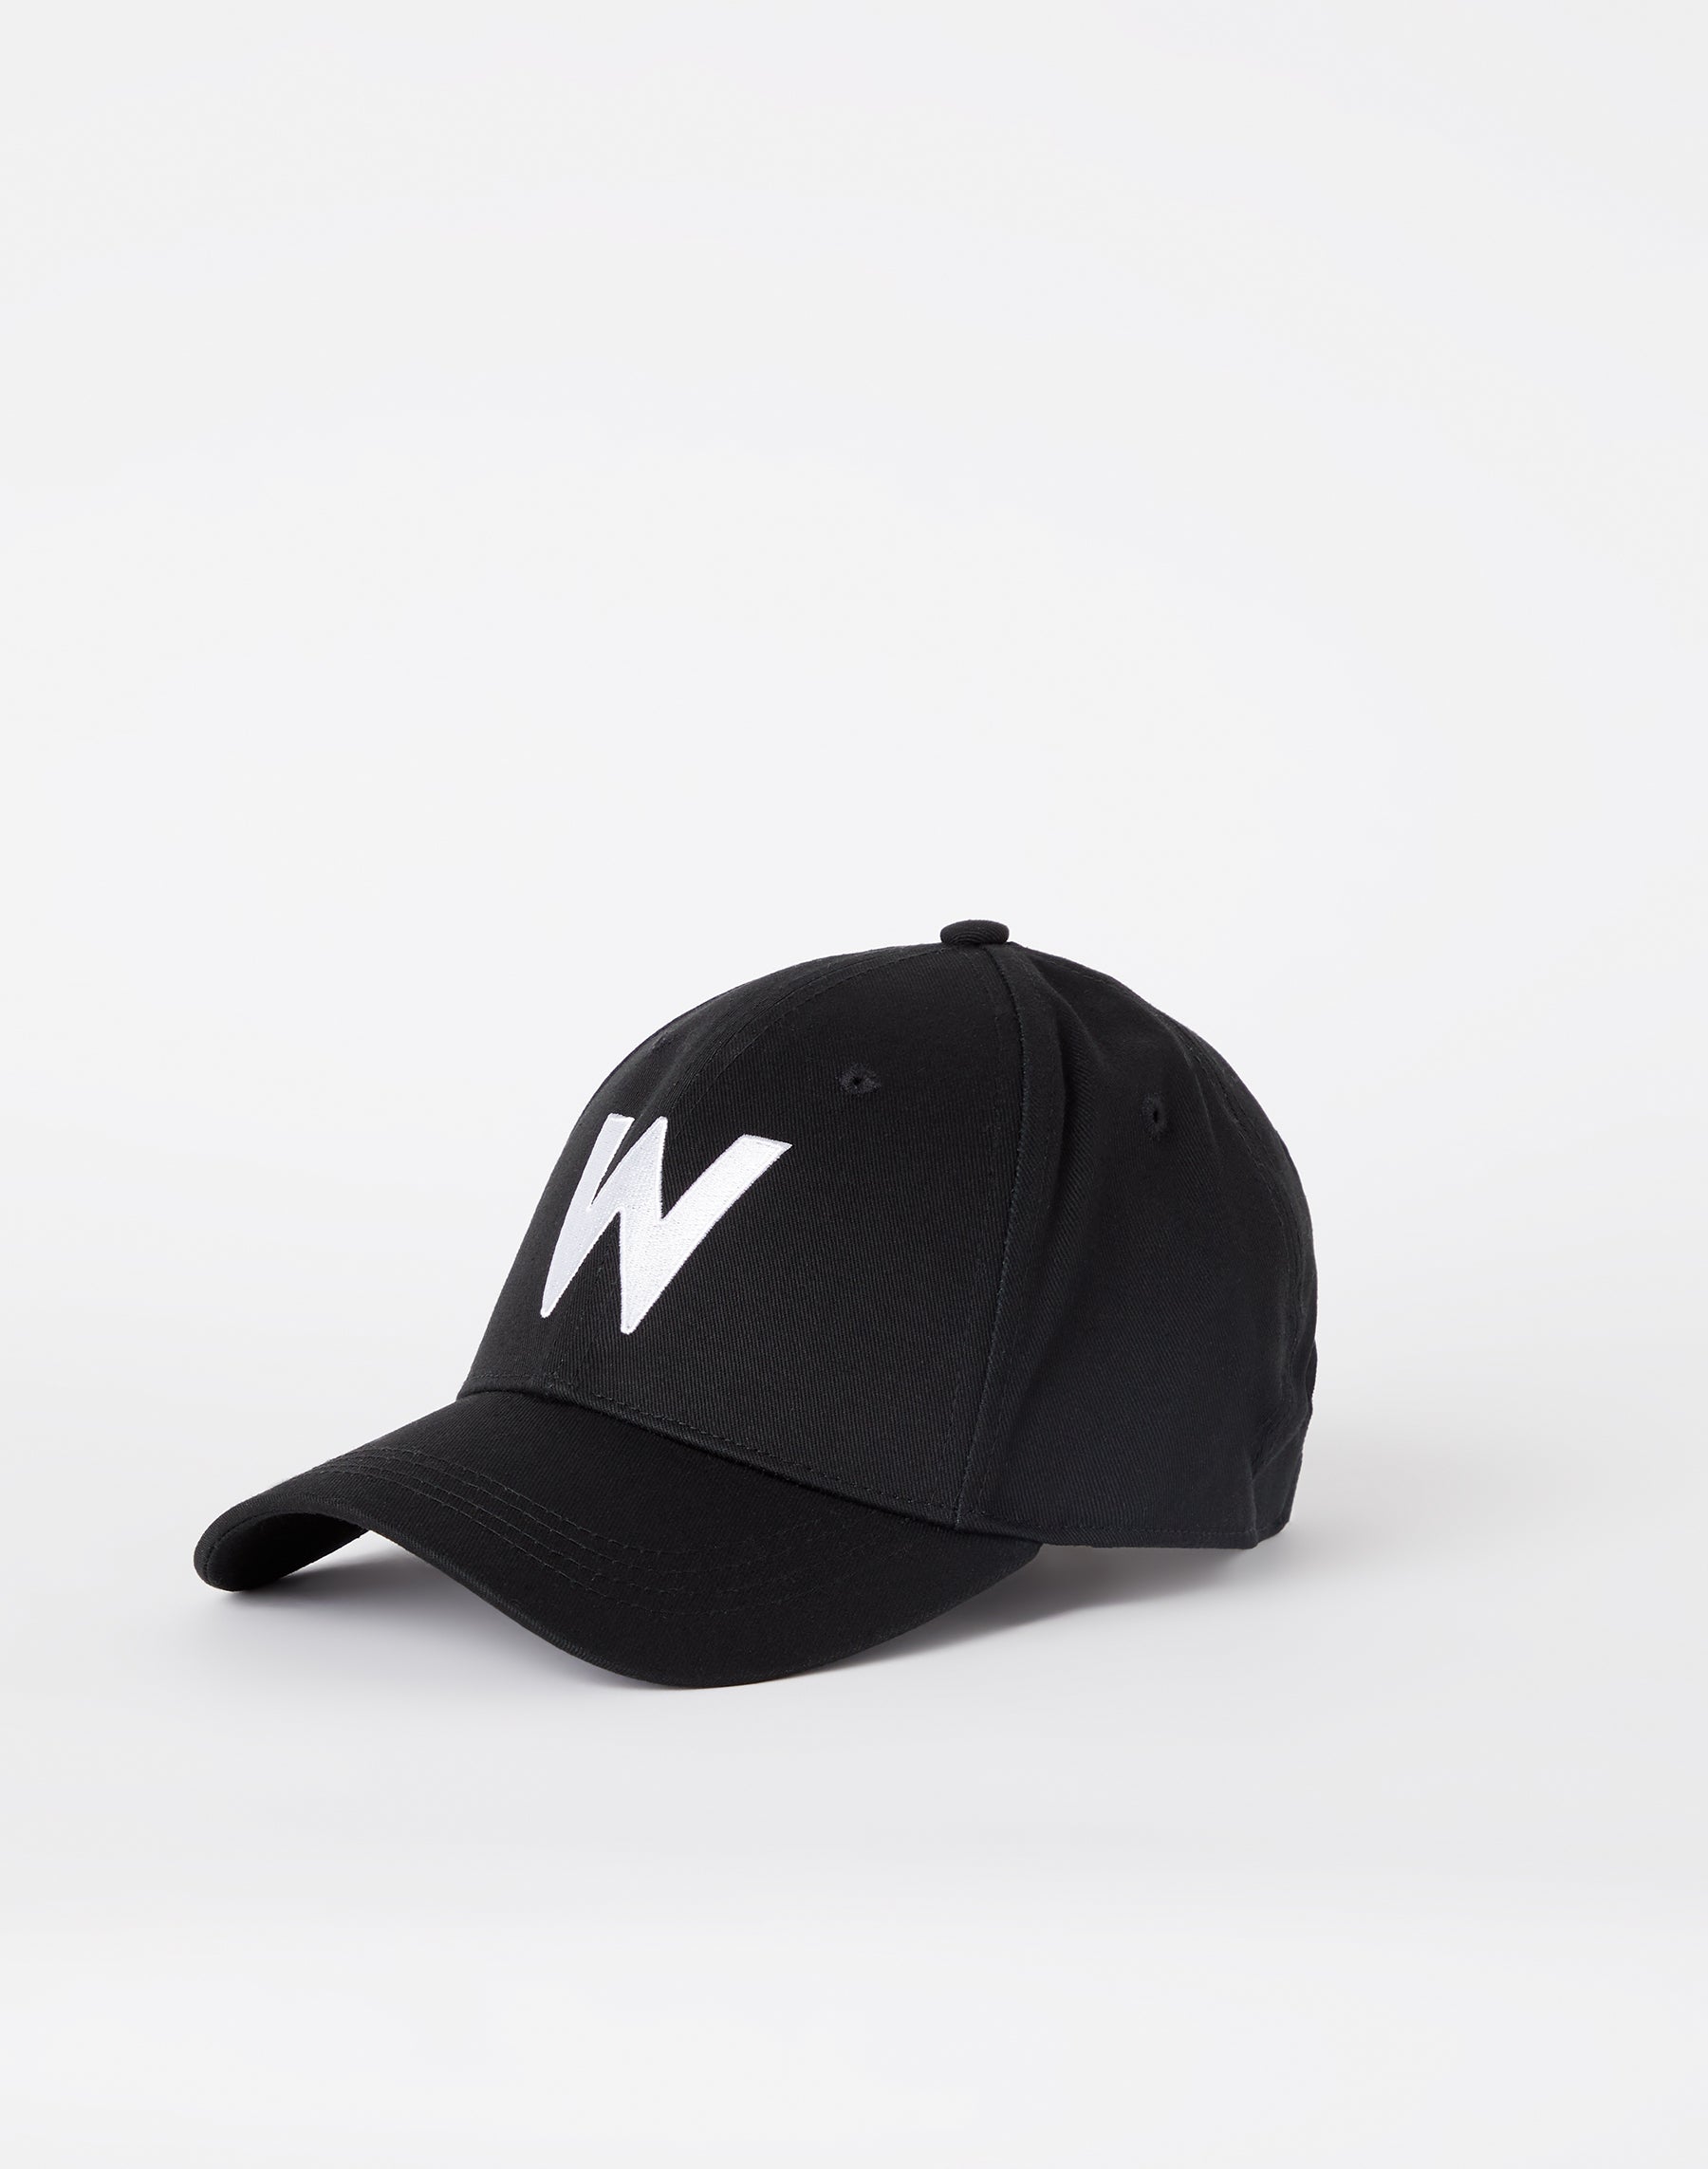 W Logo Cap in Black Caps Wrangler   